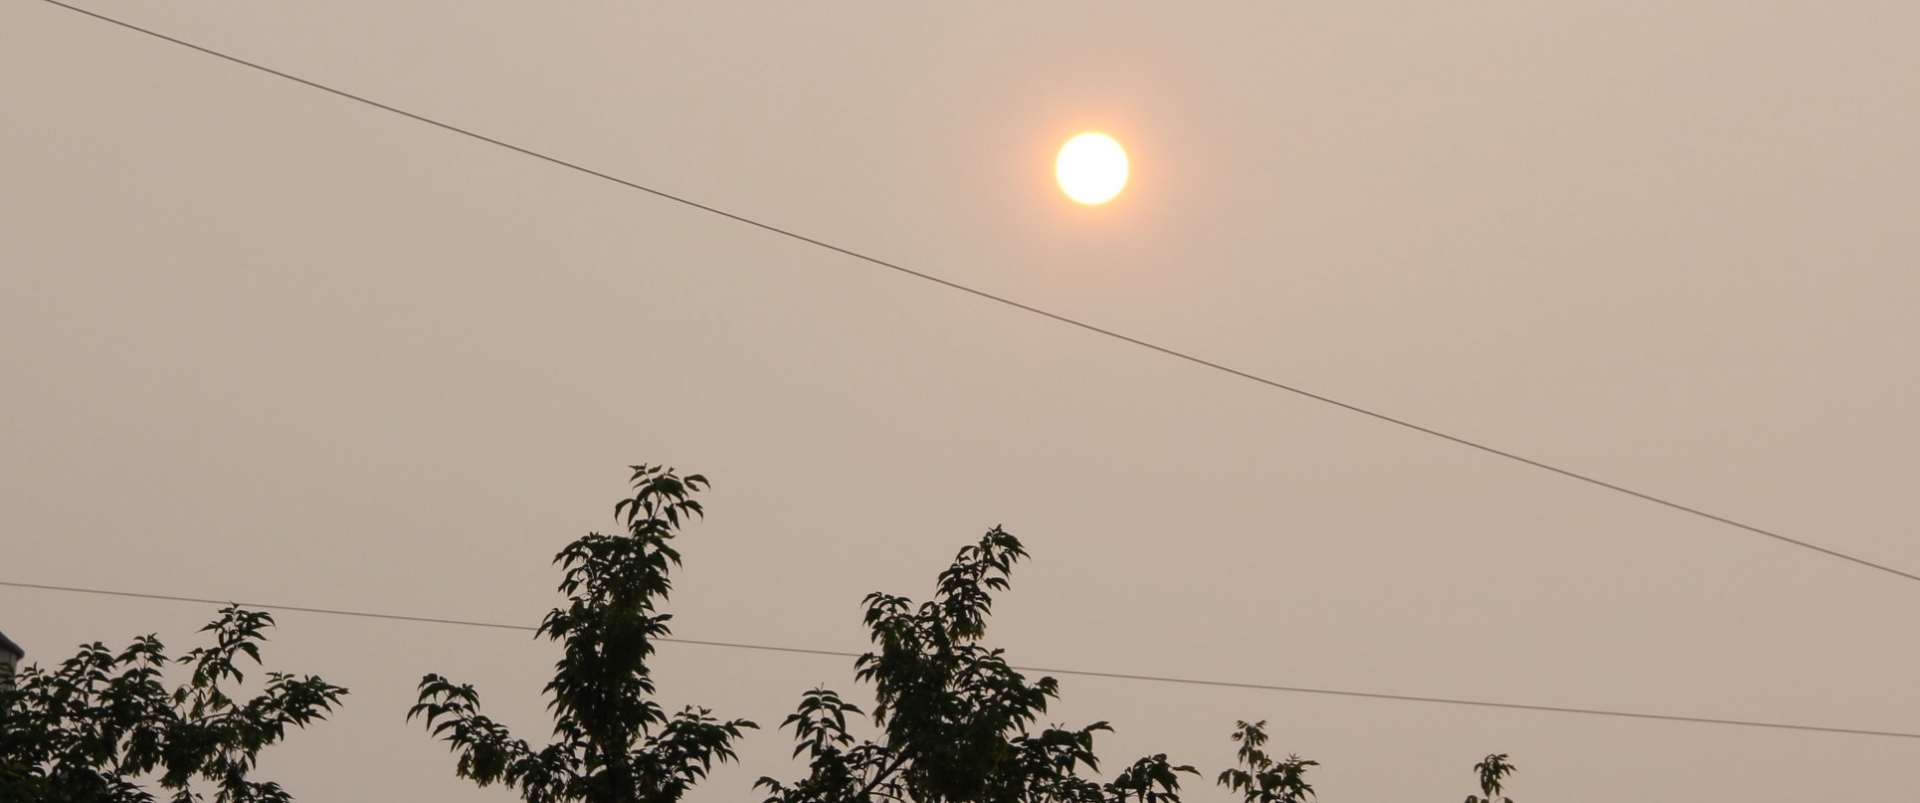 В Барнауле из-за сибирских пожарищ виден лишь контур Солнца